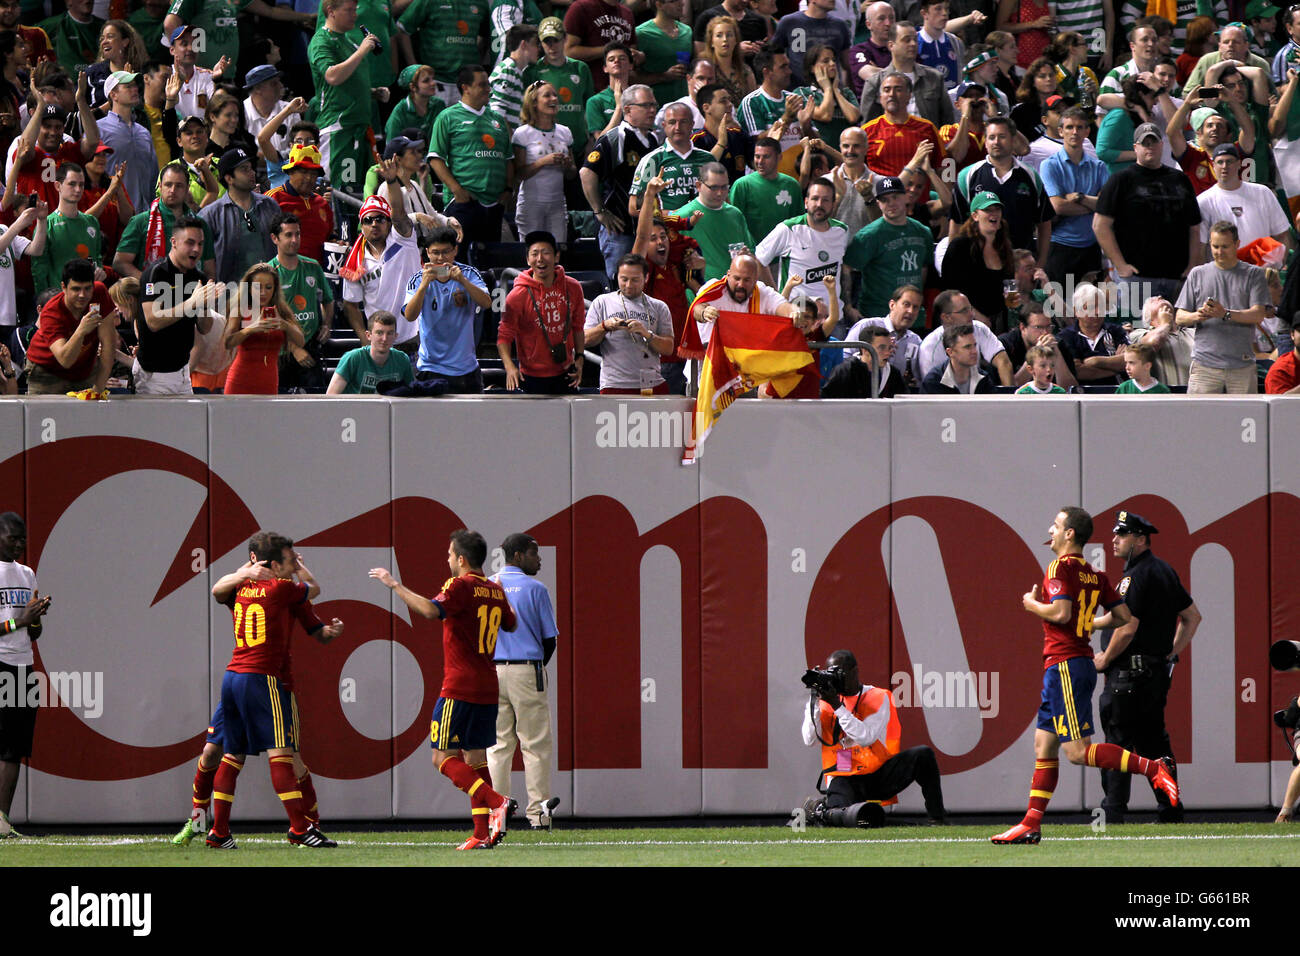 La spagnola Juan Mata (a sinistra nascosta) celebra il punteggio con i compagni di squadra durante l'International friendly allo Yankee Stadium, New York, USA. Foto Stock